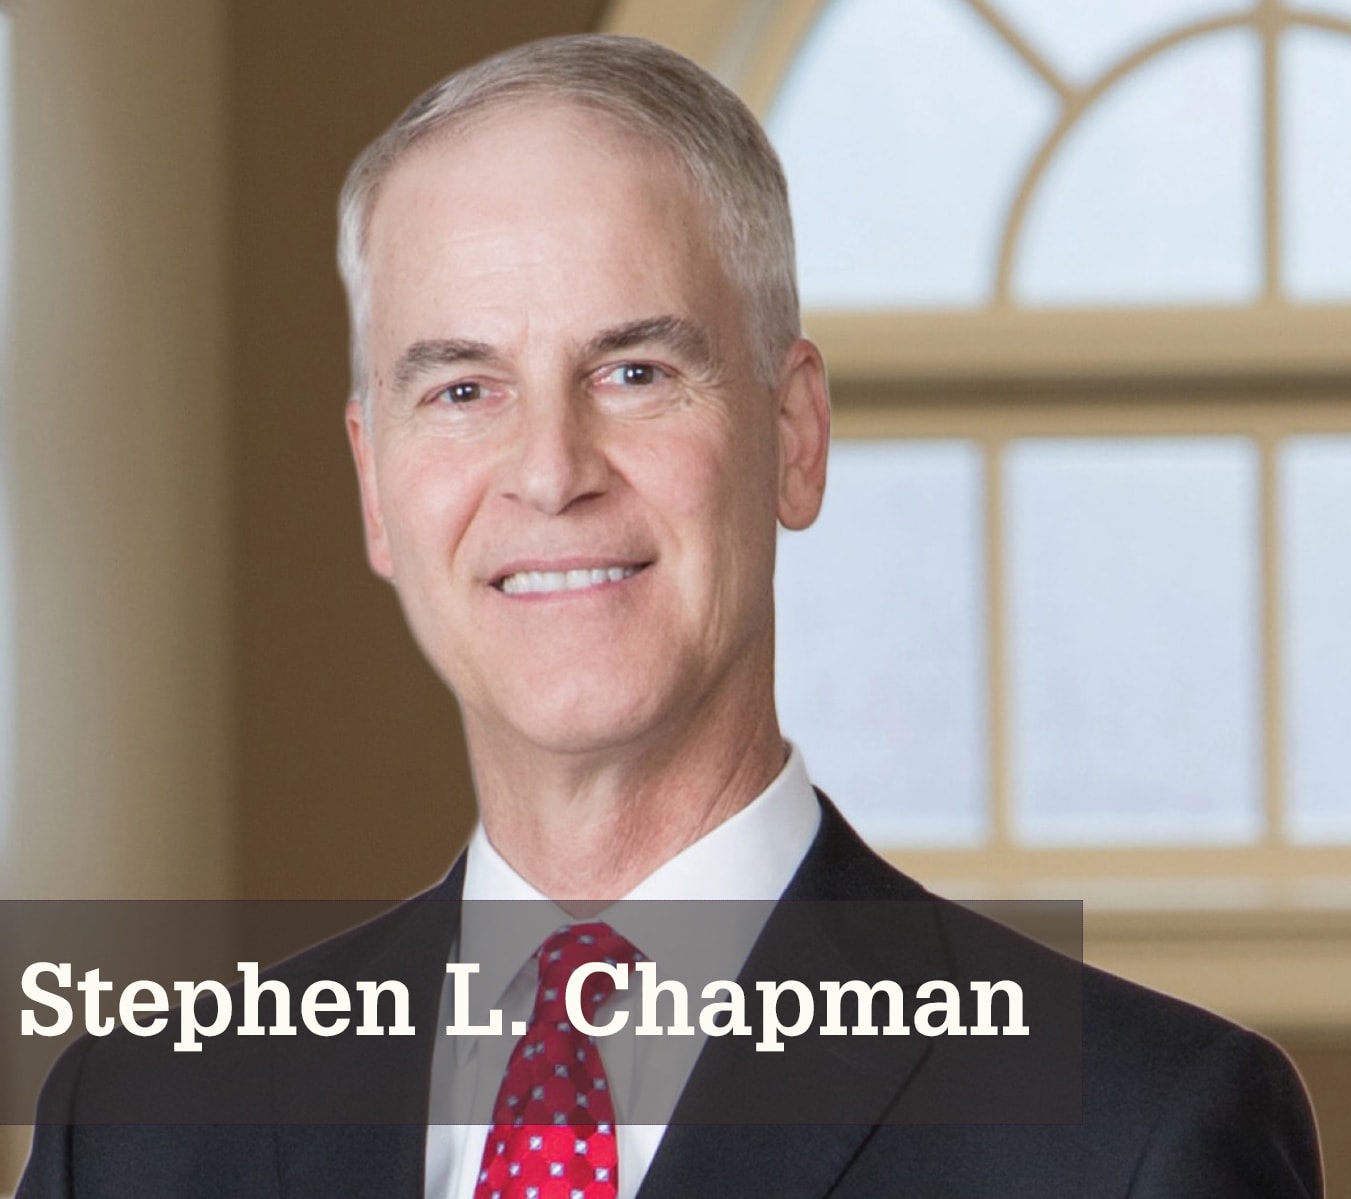 Stephen L. Chapman